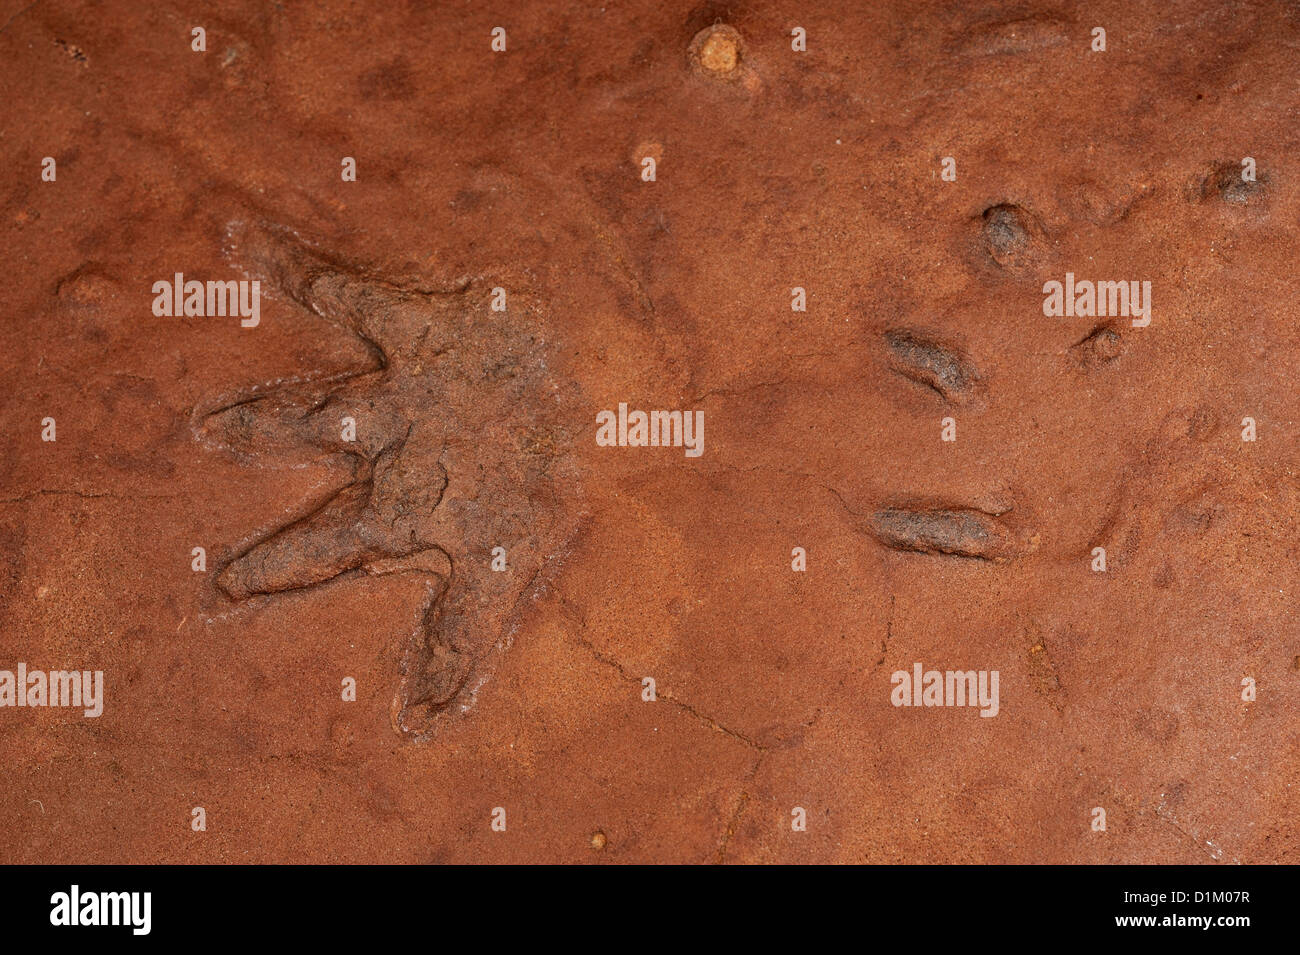 Fuß-Marke von Laoporus SP., vierbeinigen tetrapod Wirbeltiere, Synapsiden, Coconino Sandstein, Ash Fork-Bereich, Arizona, Ua Stockfoto